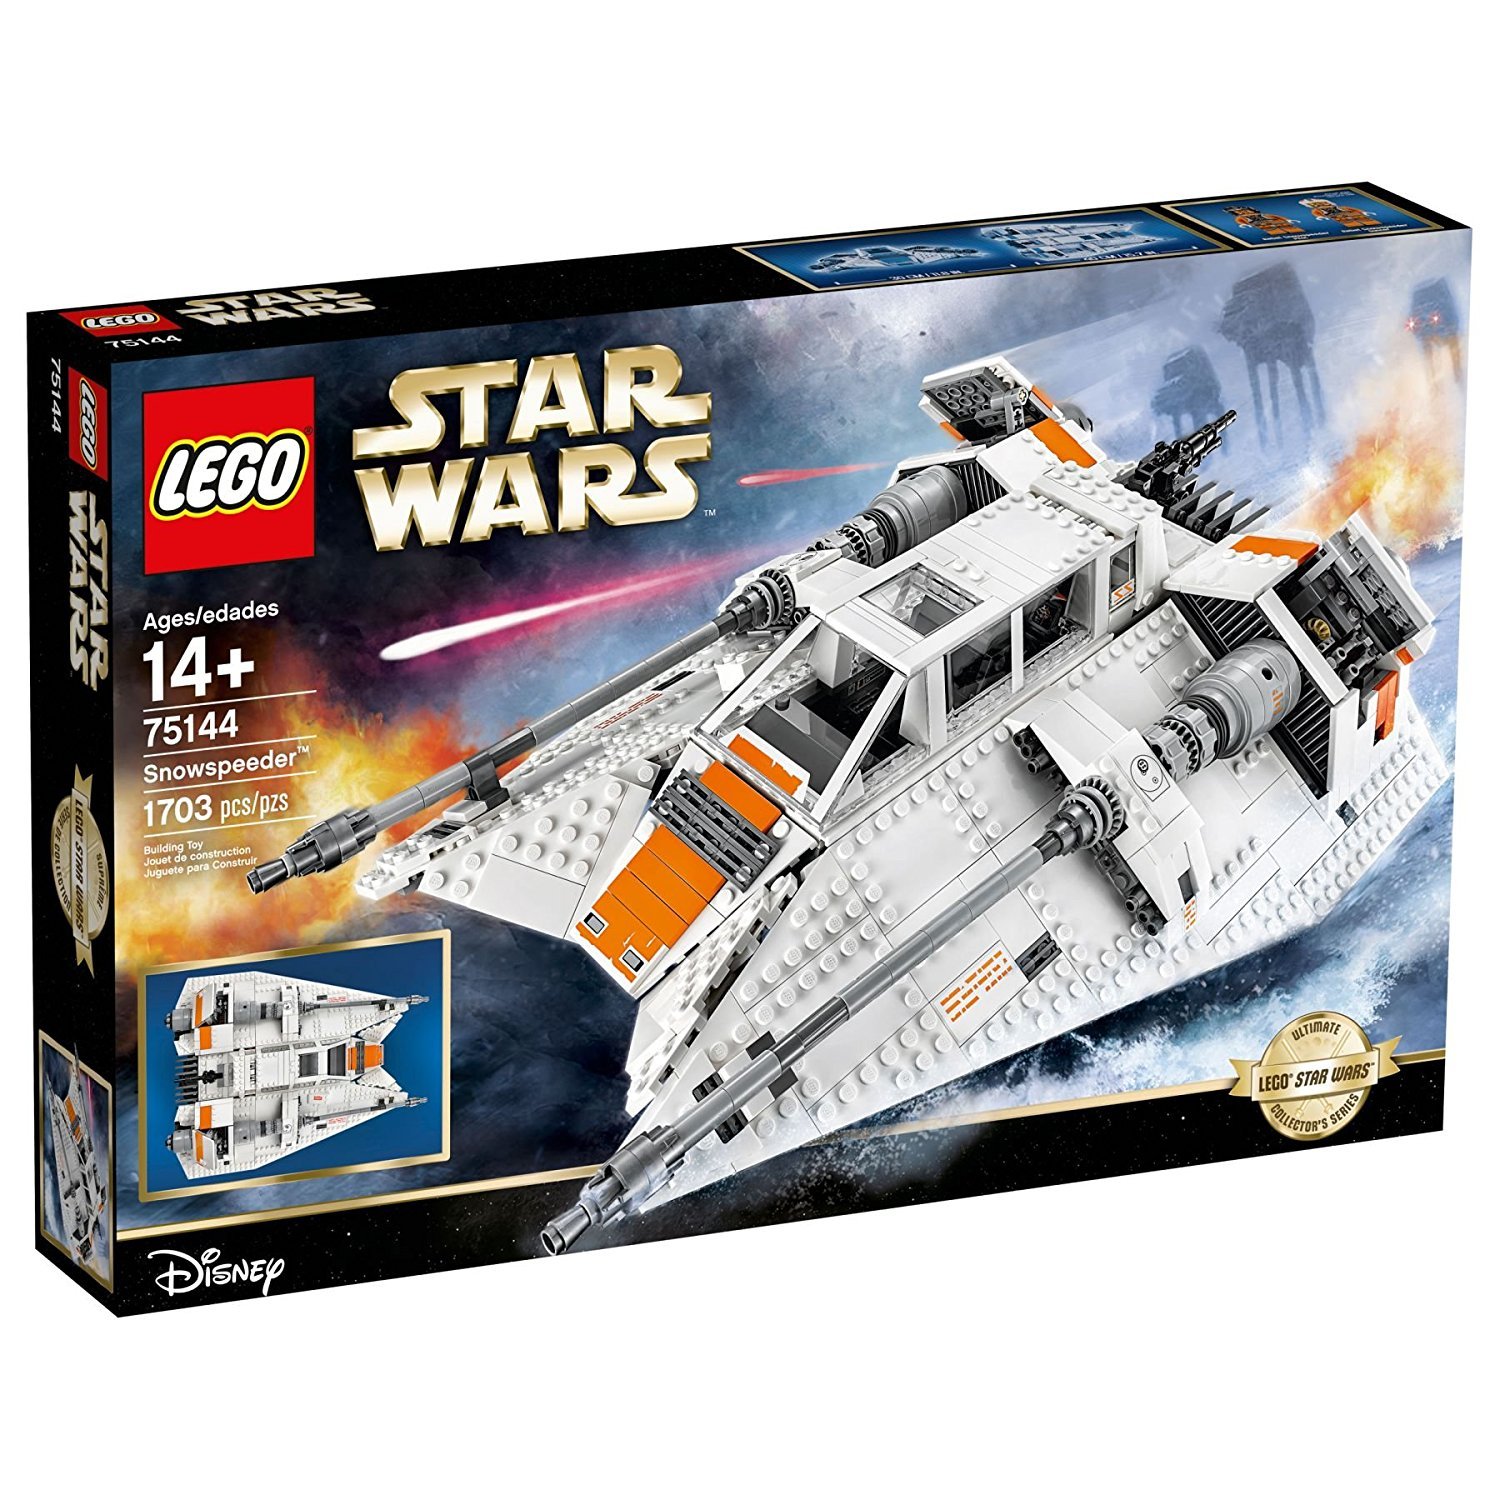 Lego STAR WARS 75144 Snowspeeder